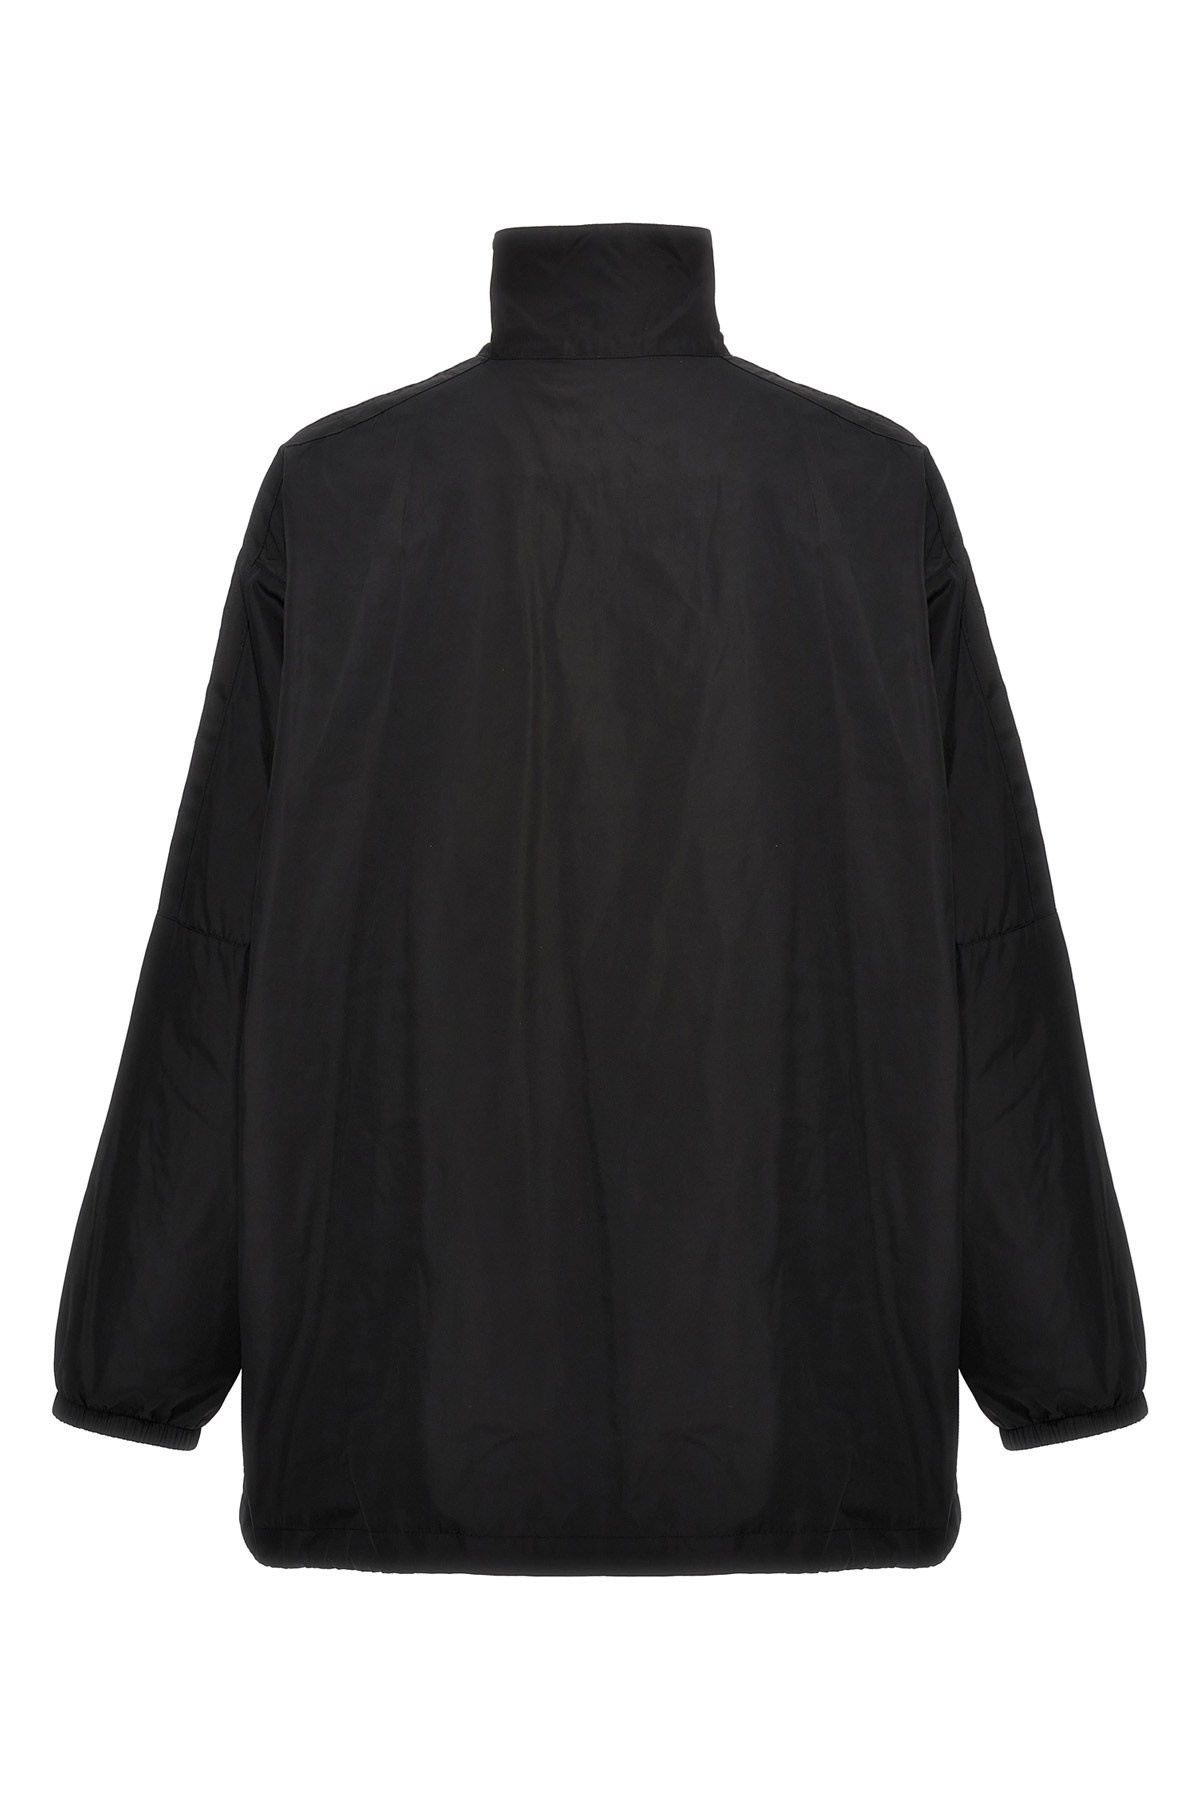 'Balenciaga' jacket - 3